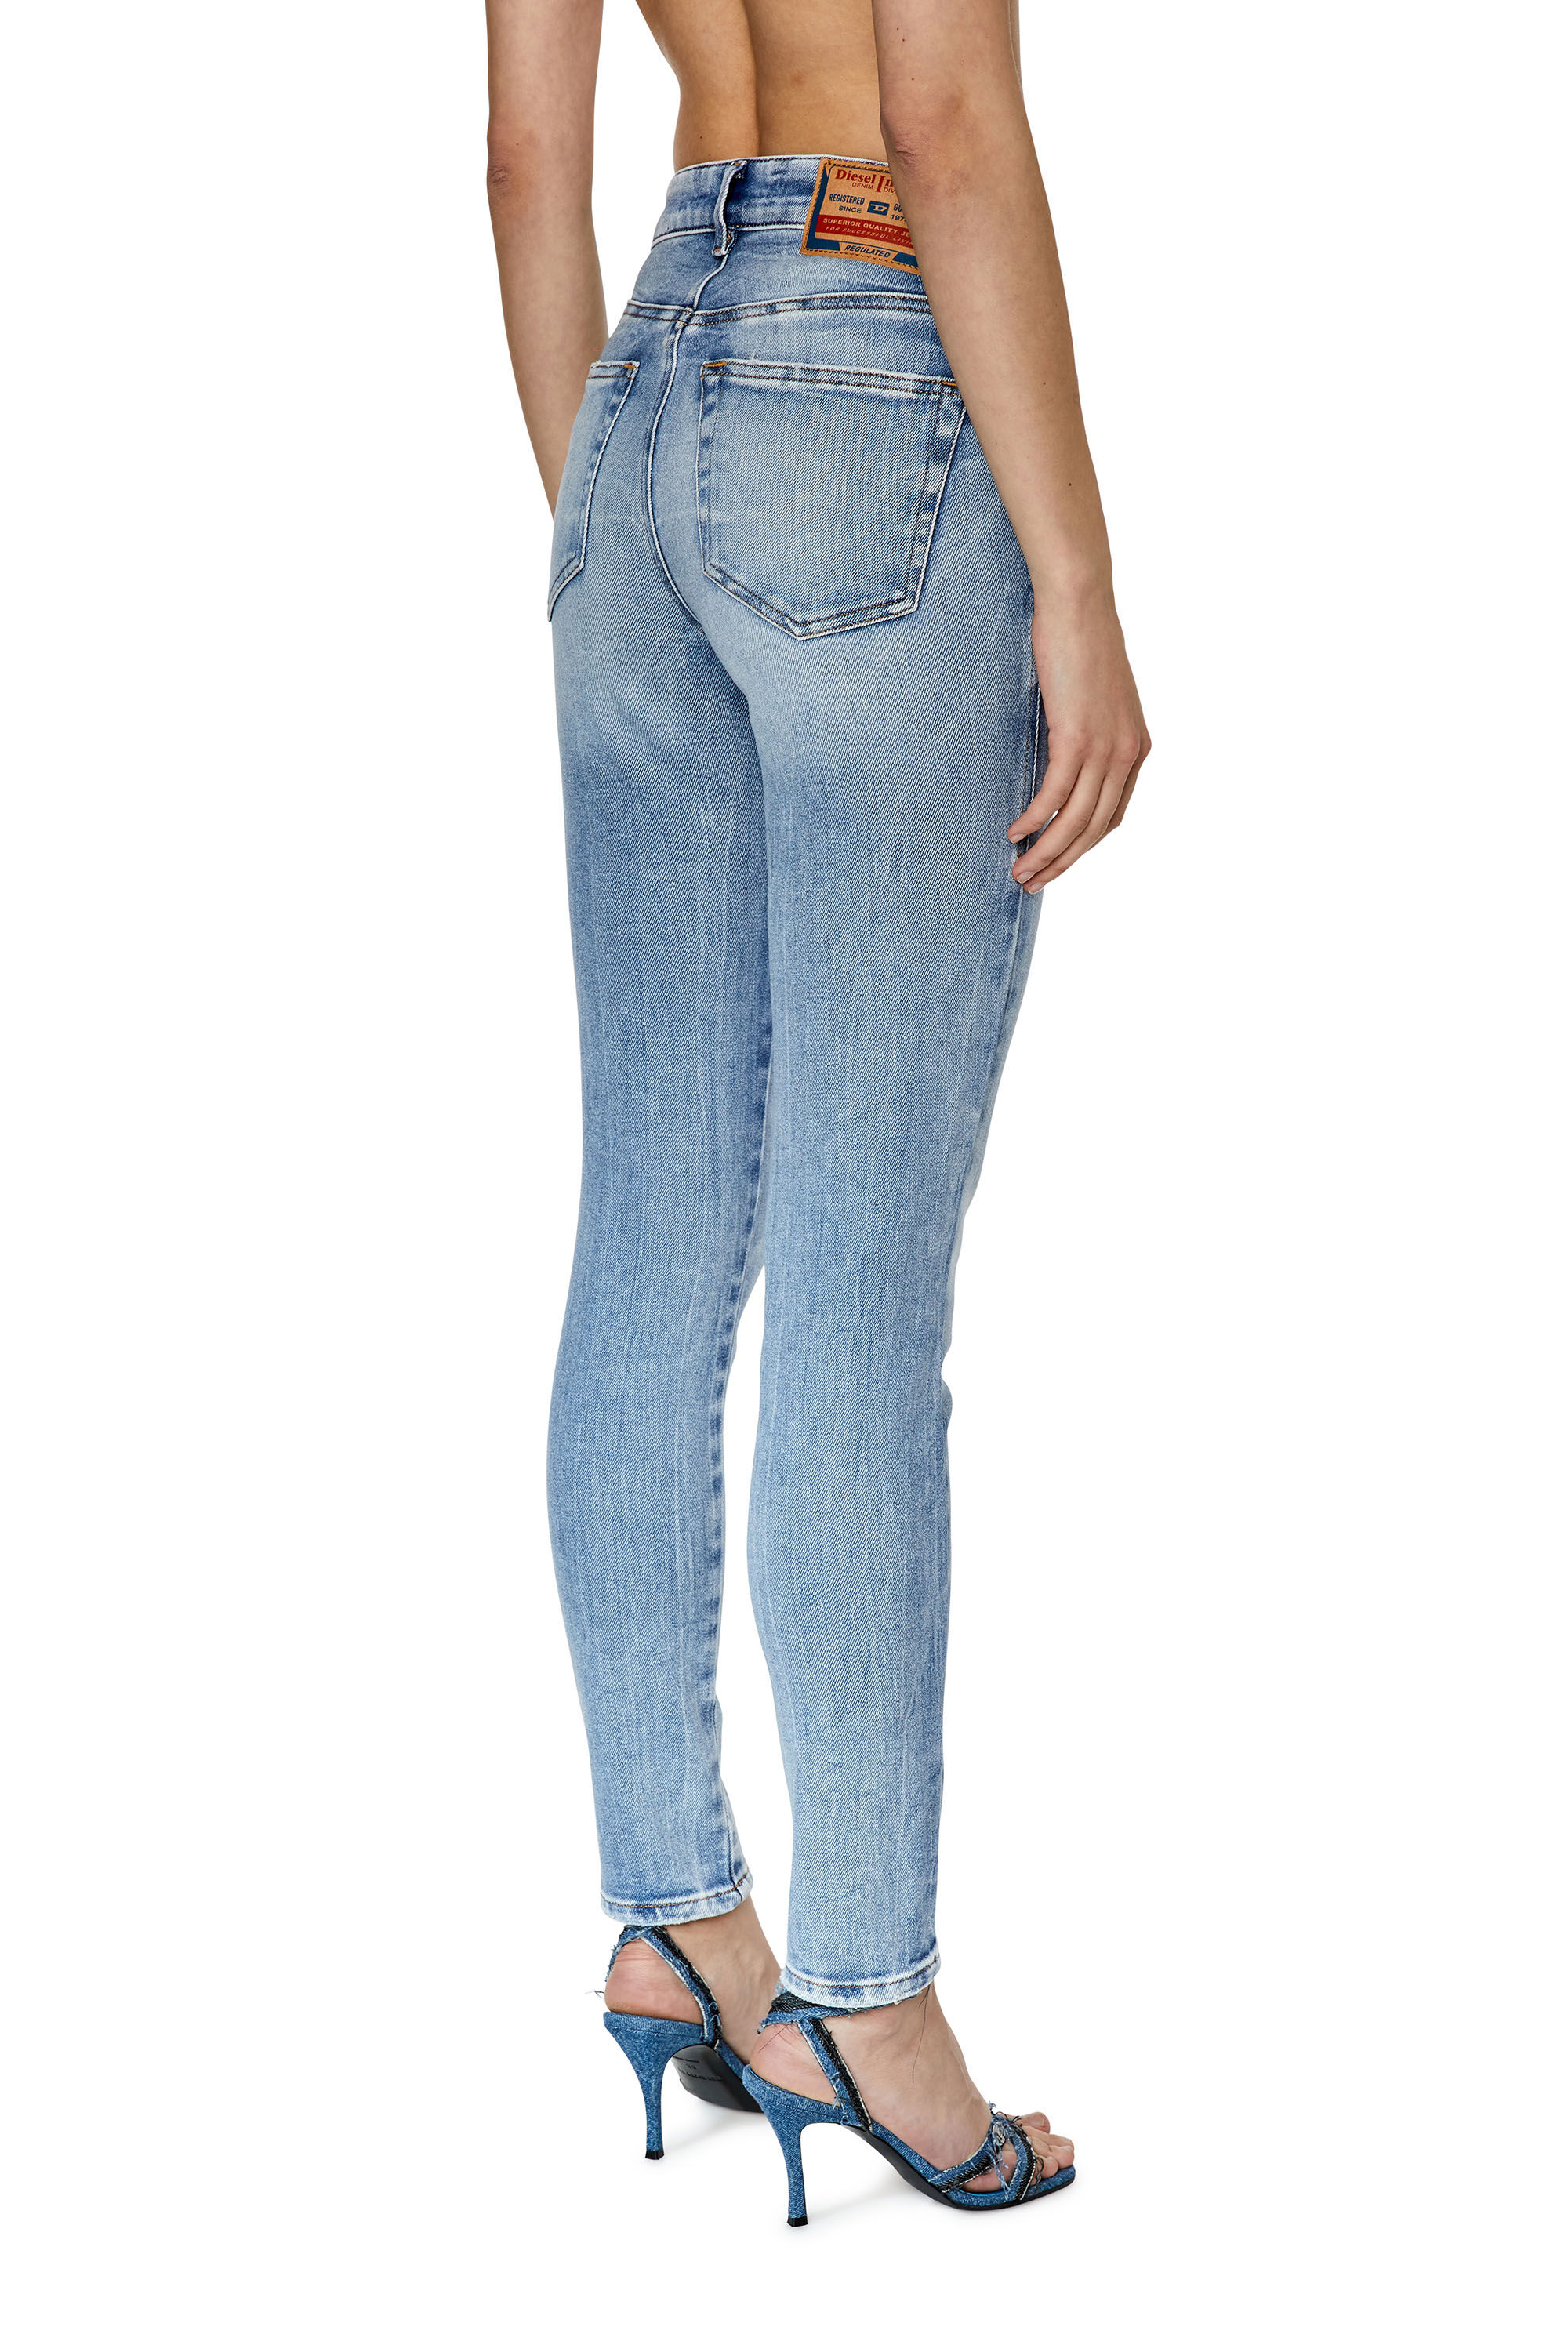 Women's Super skinny Jeans | Light blue | Diesel 2017 Slandy